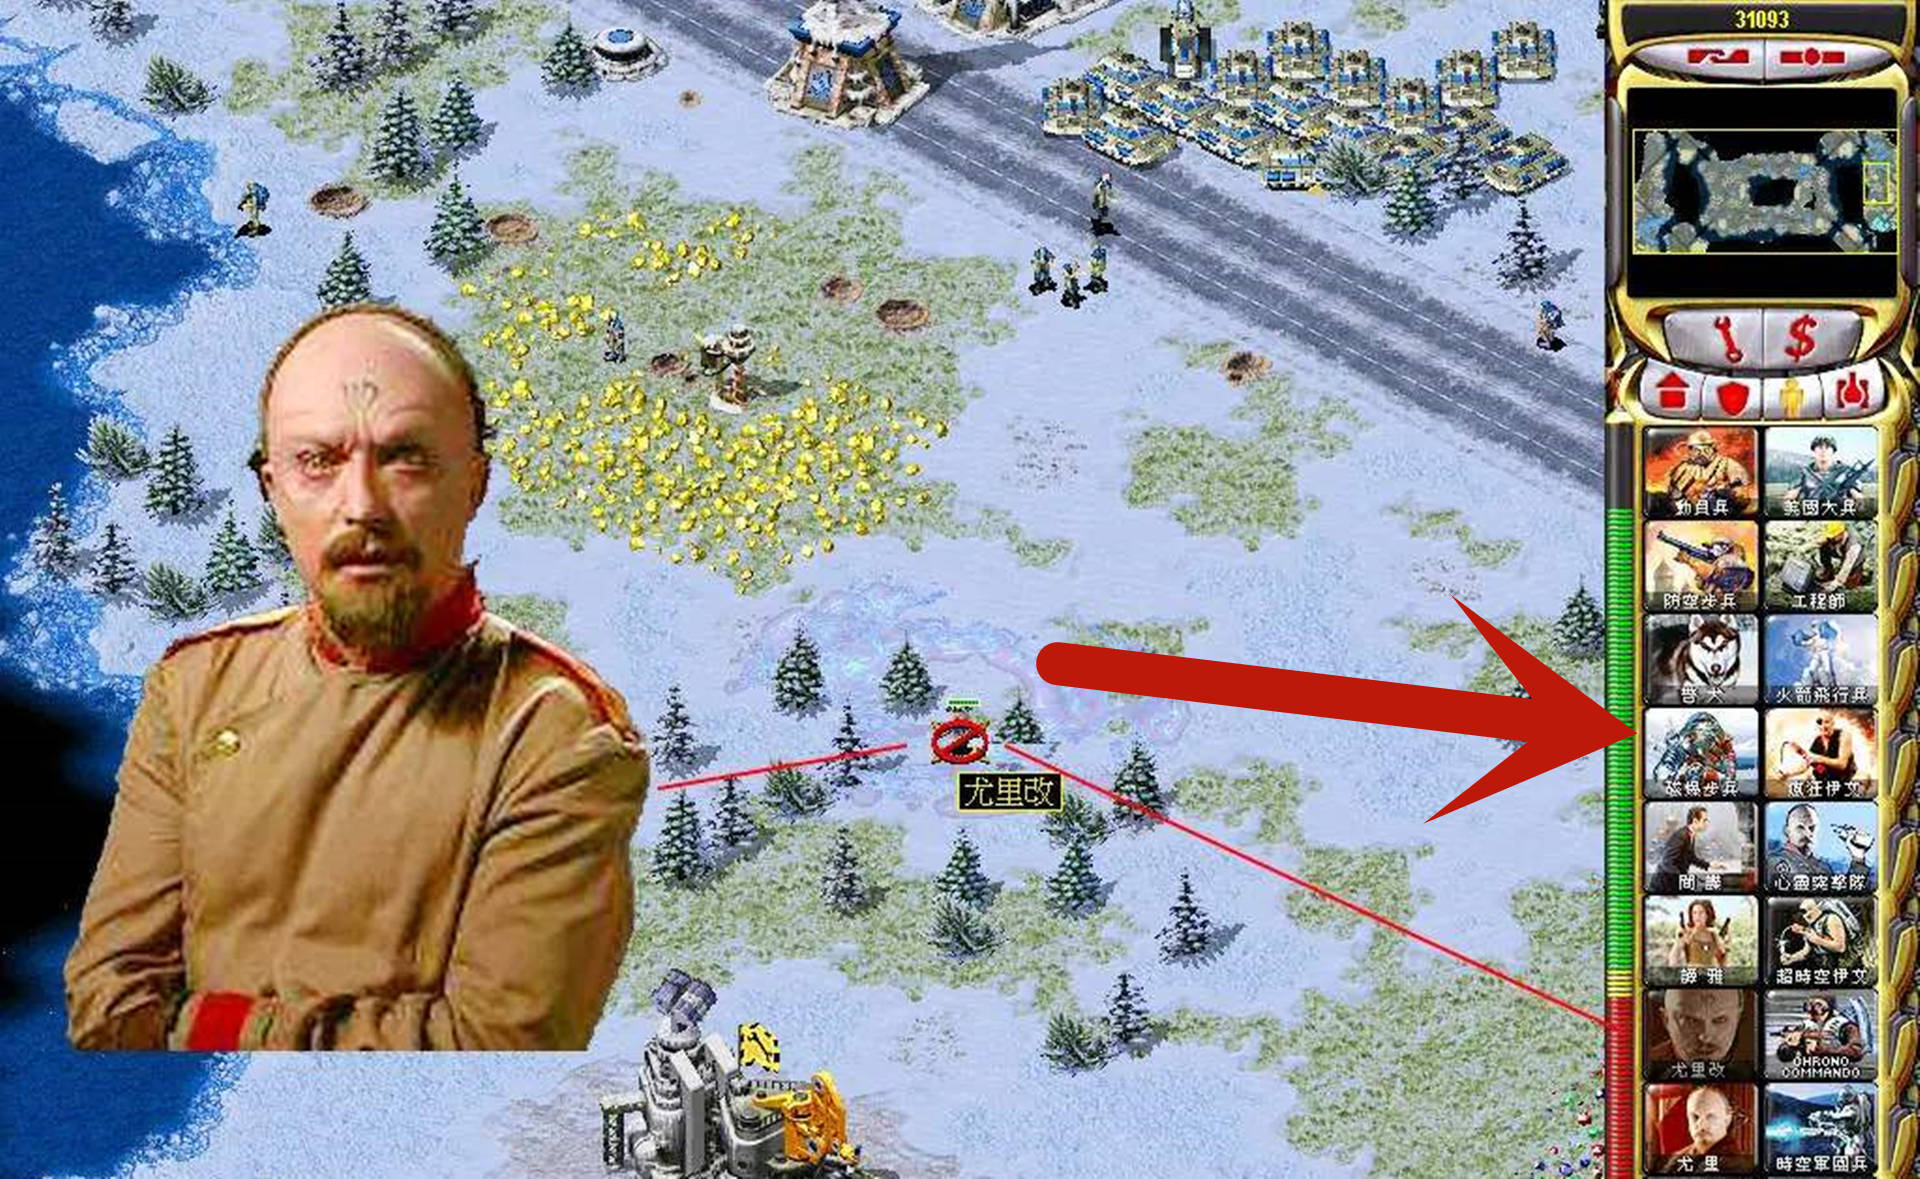 原创《红色警戒》苏联那些鸡肋的作战单位,有的连炮灰都算不上